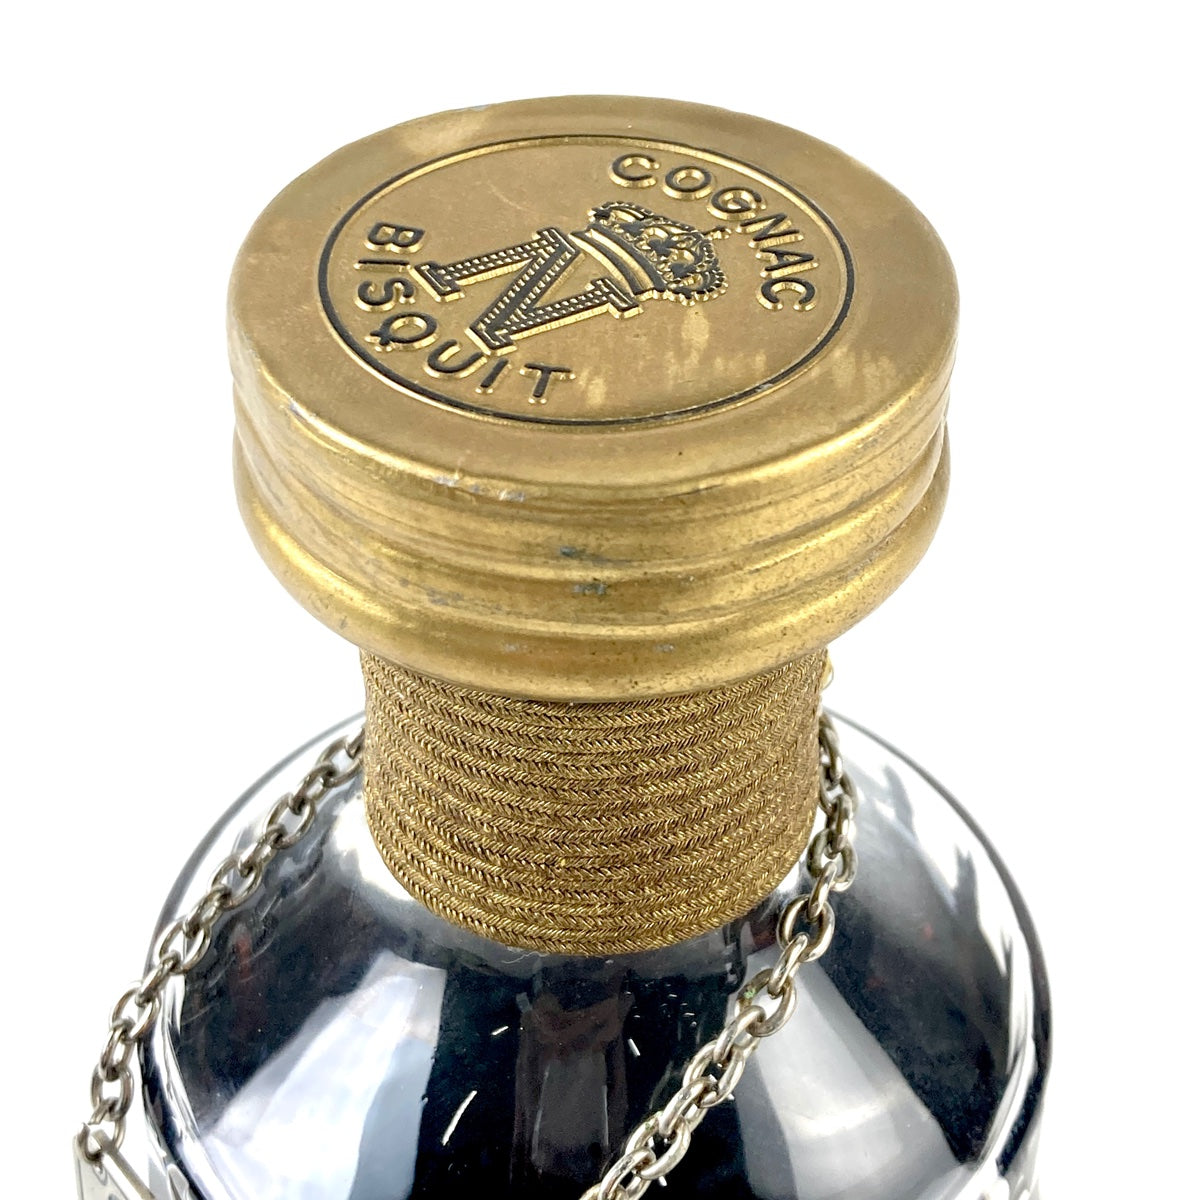 ビスキー Bisquit ナポレオン バカラ 700ml - 酒